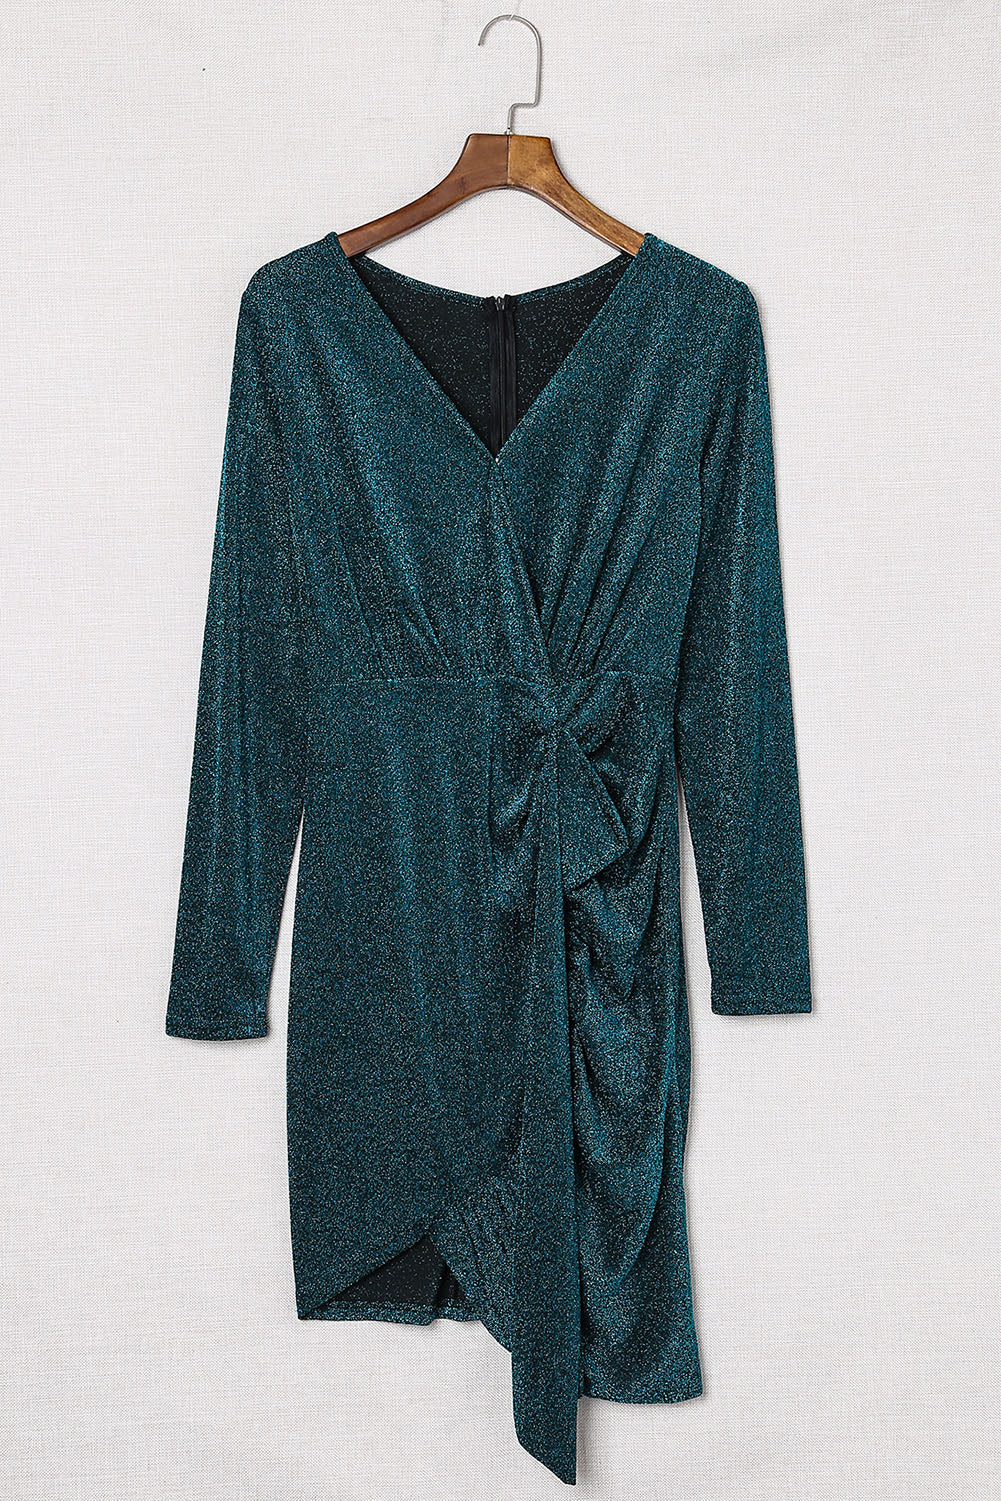 Green Glitter Wrap Over Long Sleeve Sequin Dress